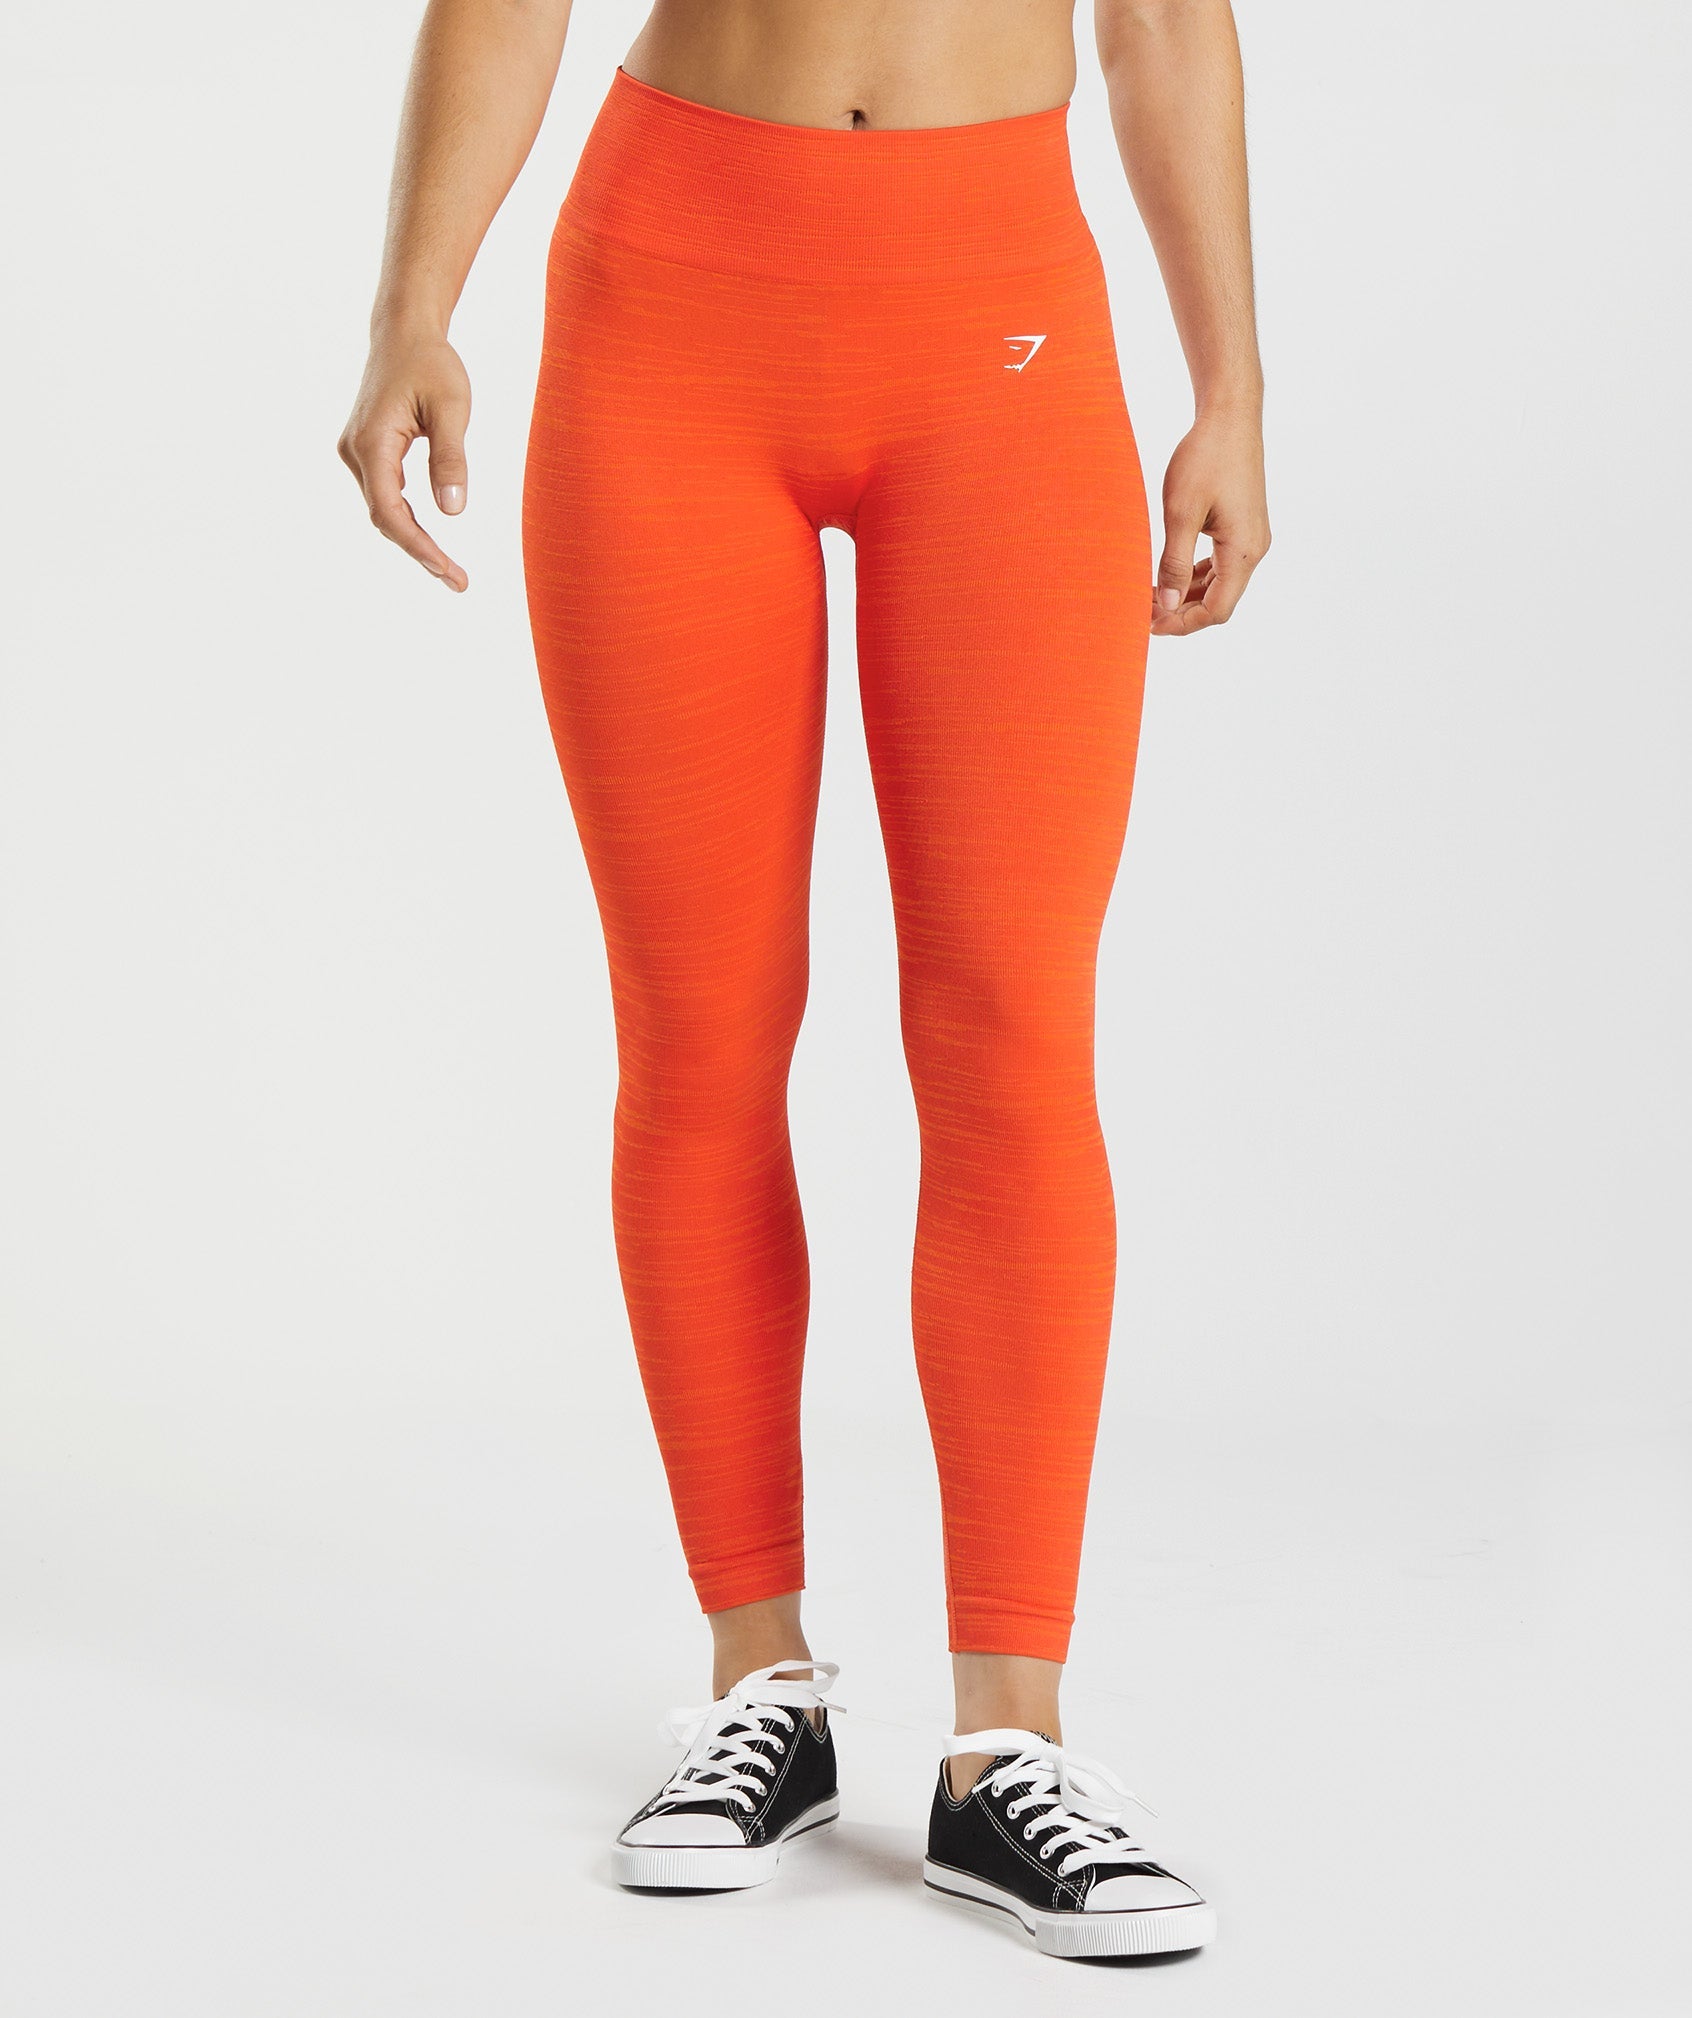 Gymshark Adapt Marl Seamless Leggings - Pepper Red/Zesty Orange